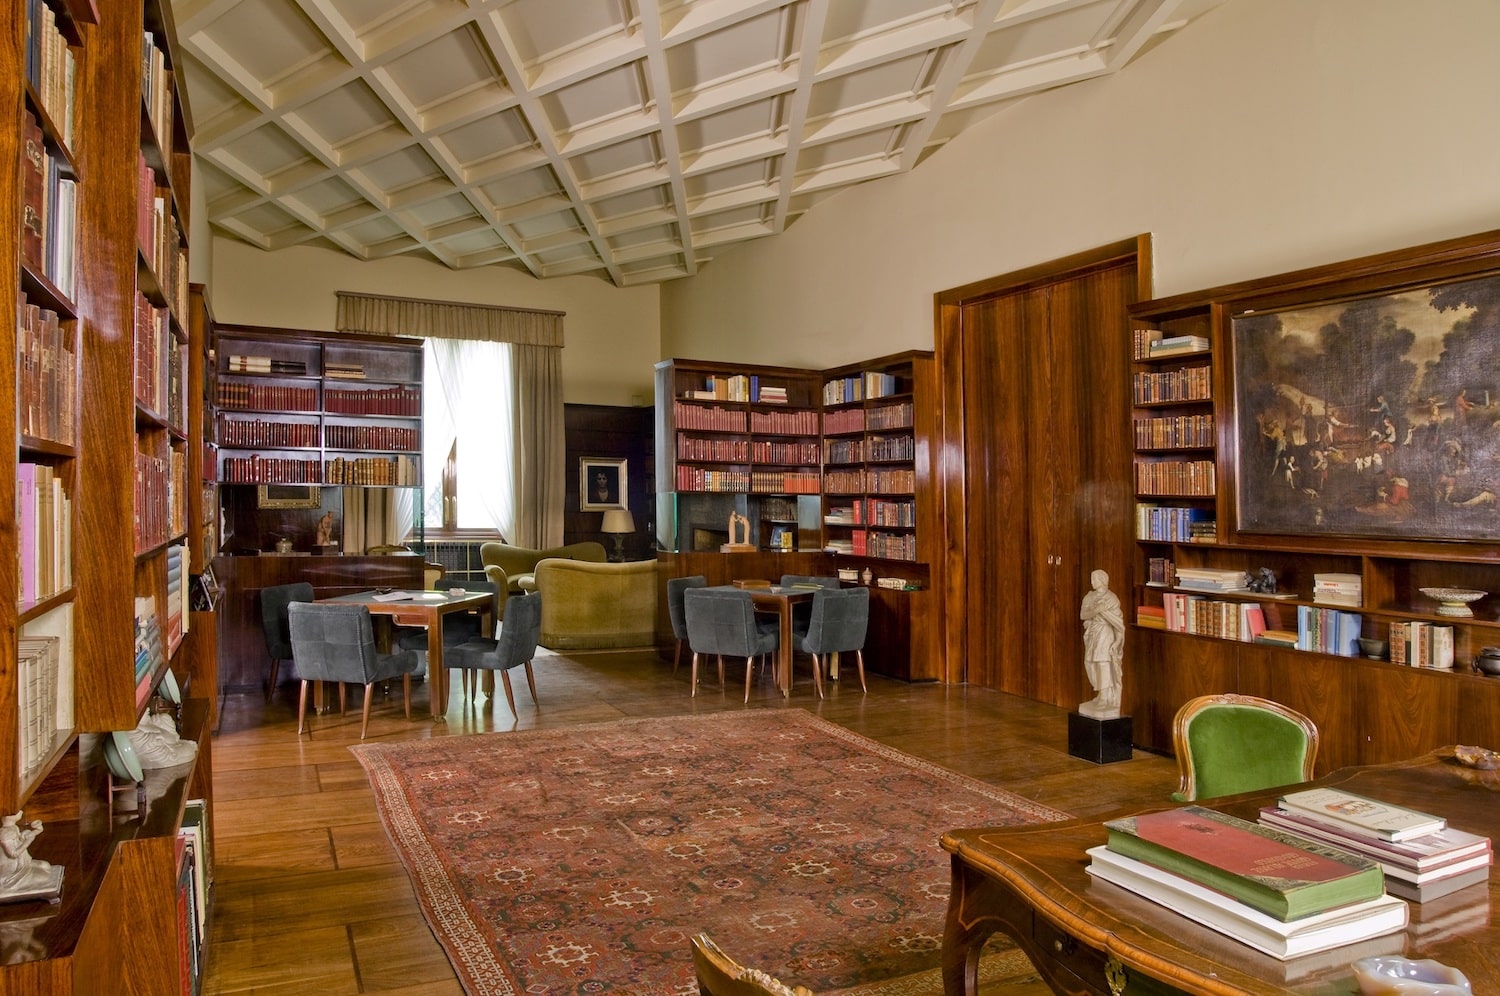 The library of Villa Necchi Campiglio